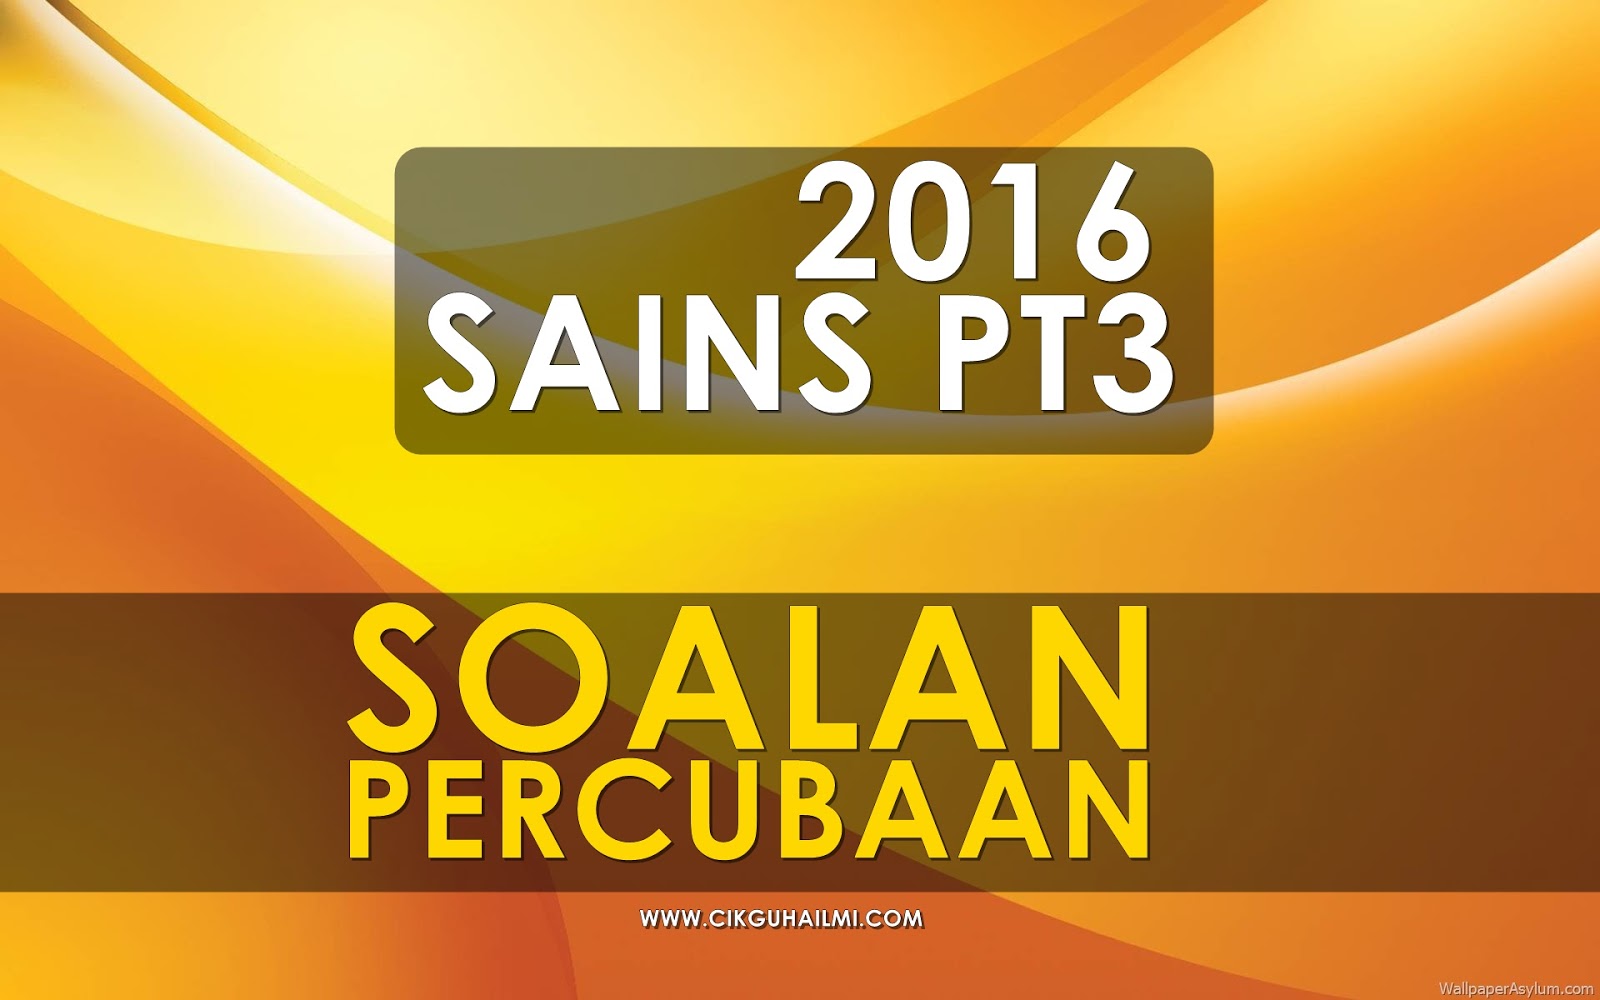 Koleksi Soalan Percubaan Sains PT3 2016 ~ CiKGUHAiLMi